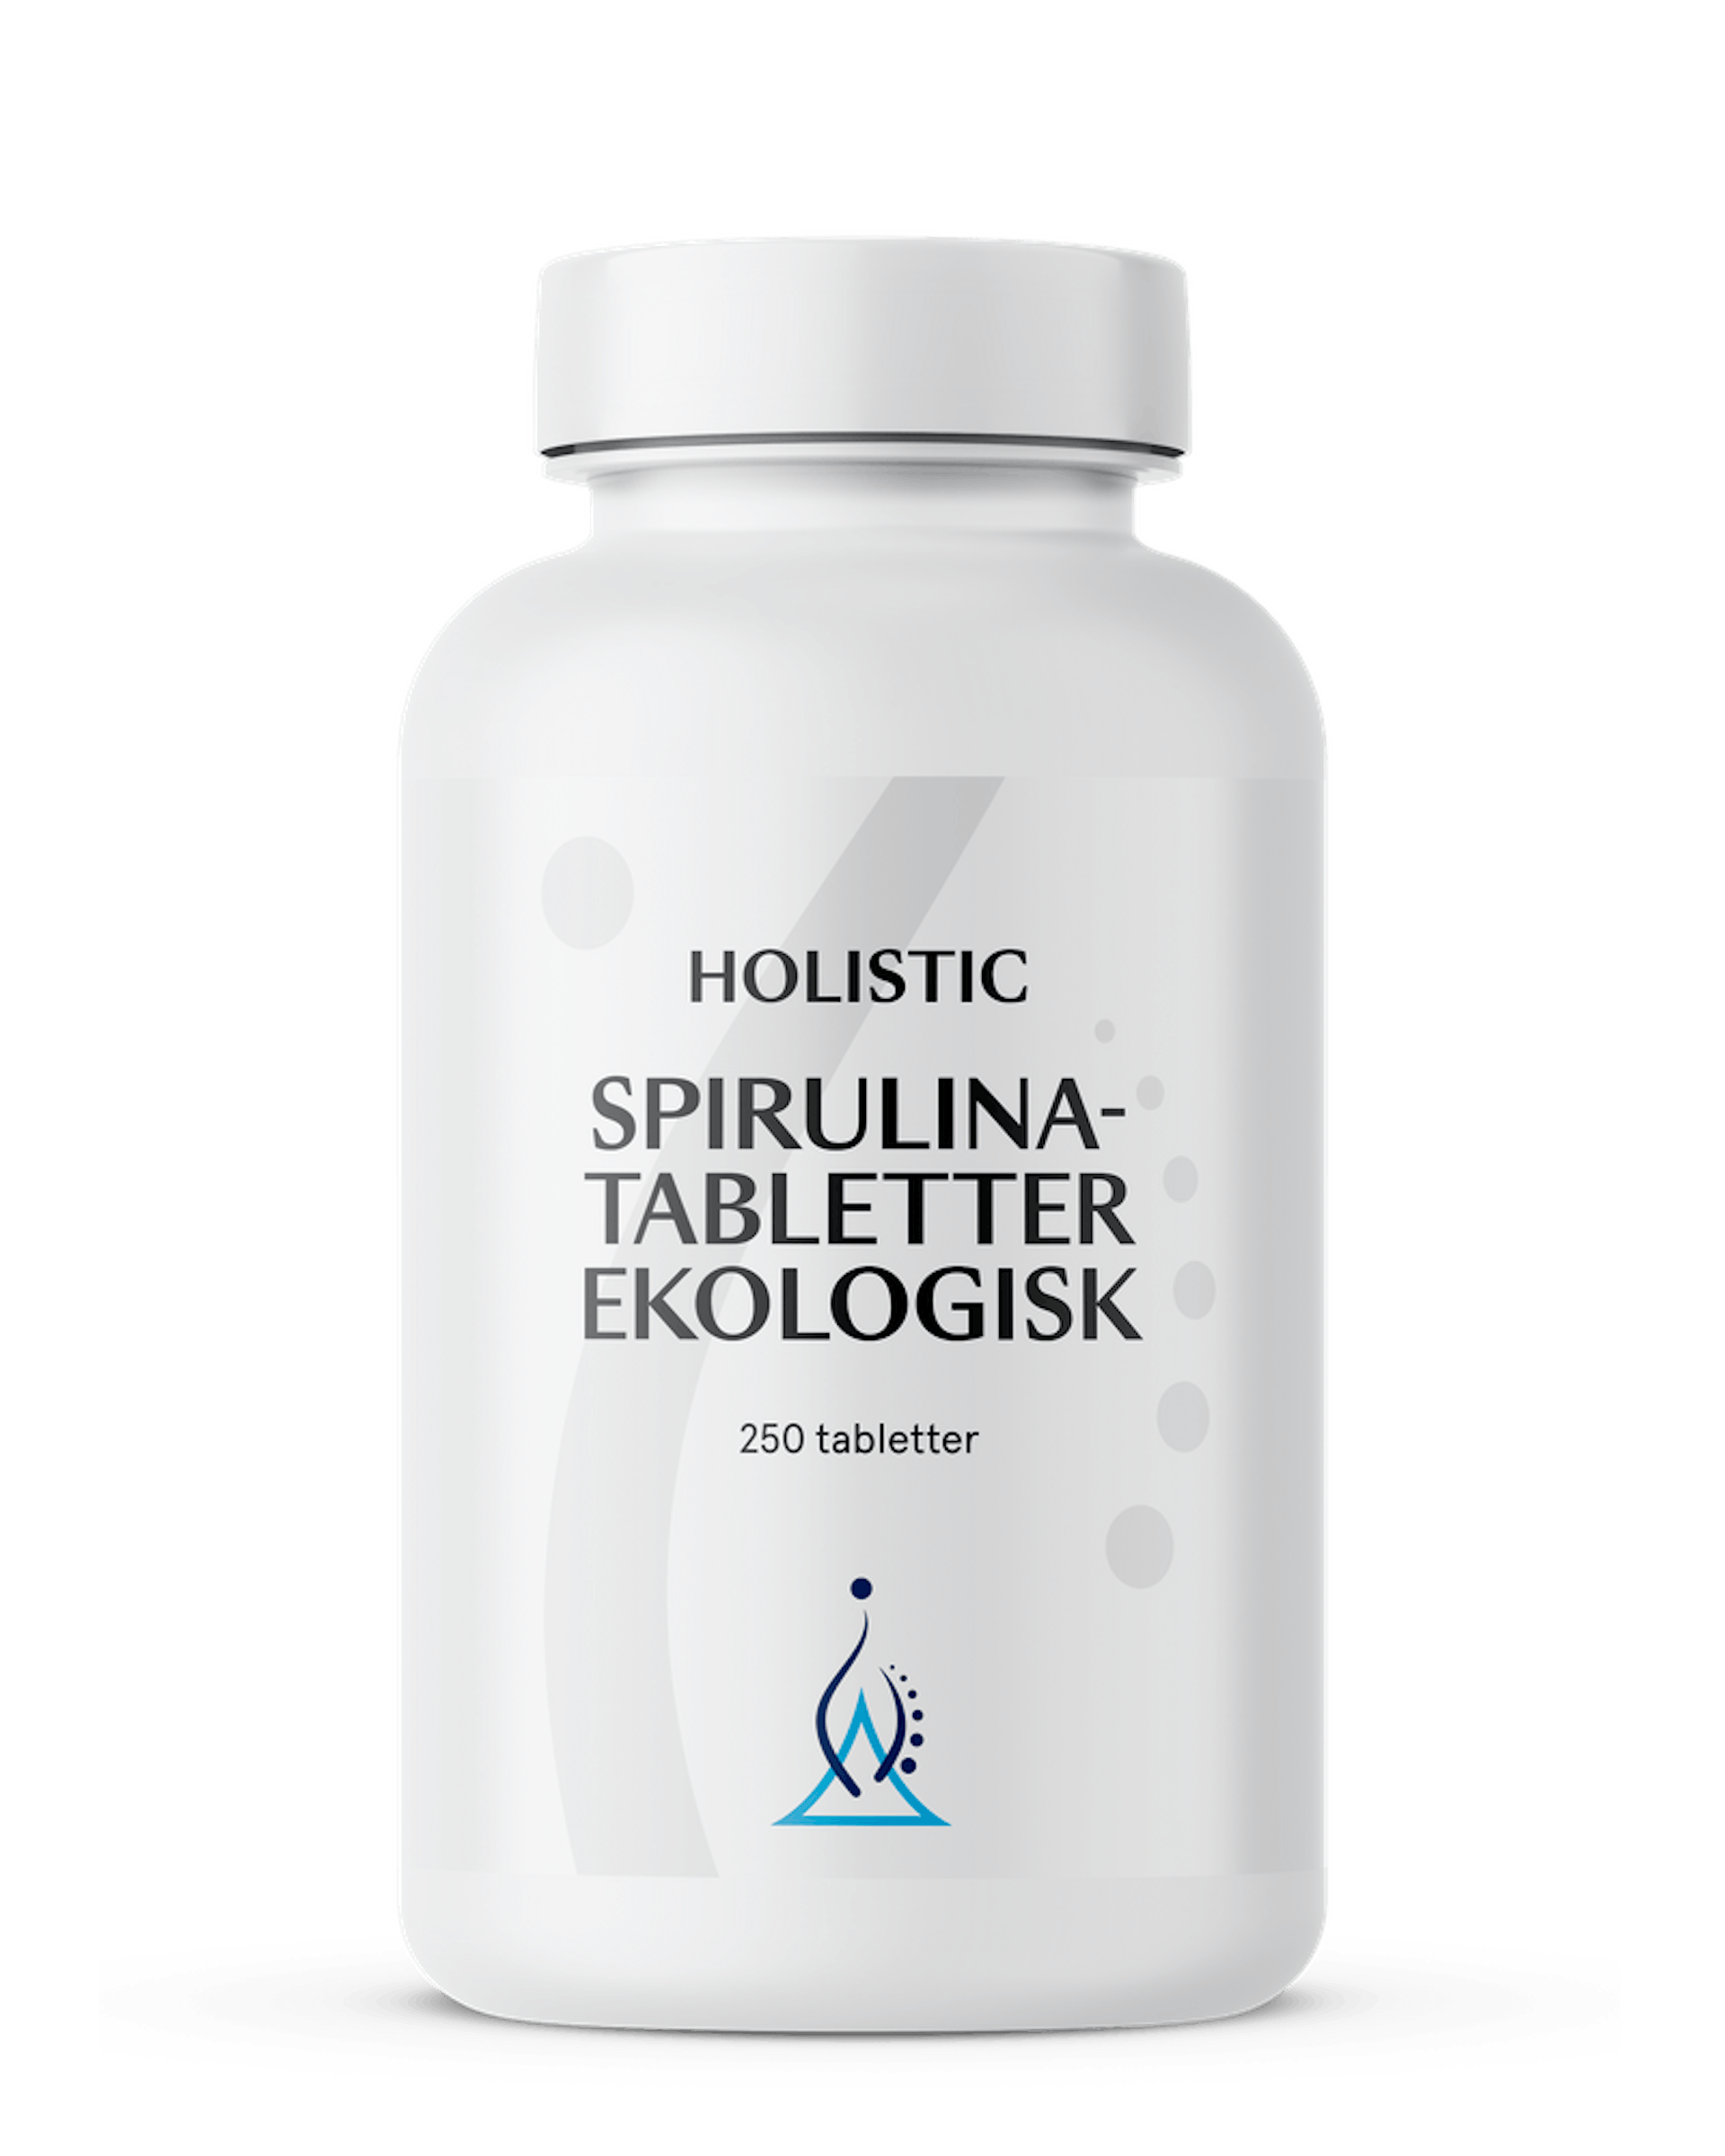 Spirulina ekologisk, 250 tabletter (1 av 1)